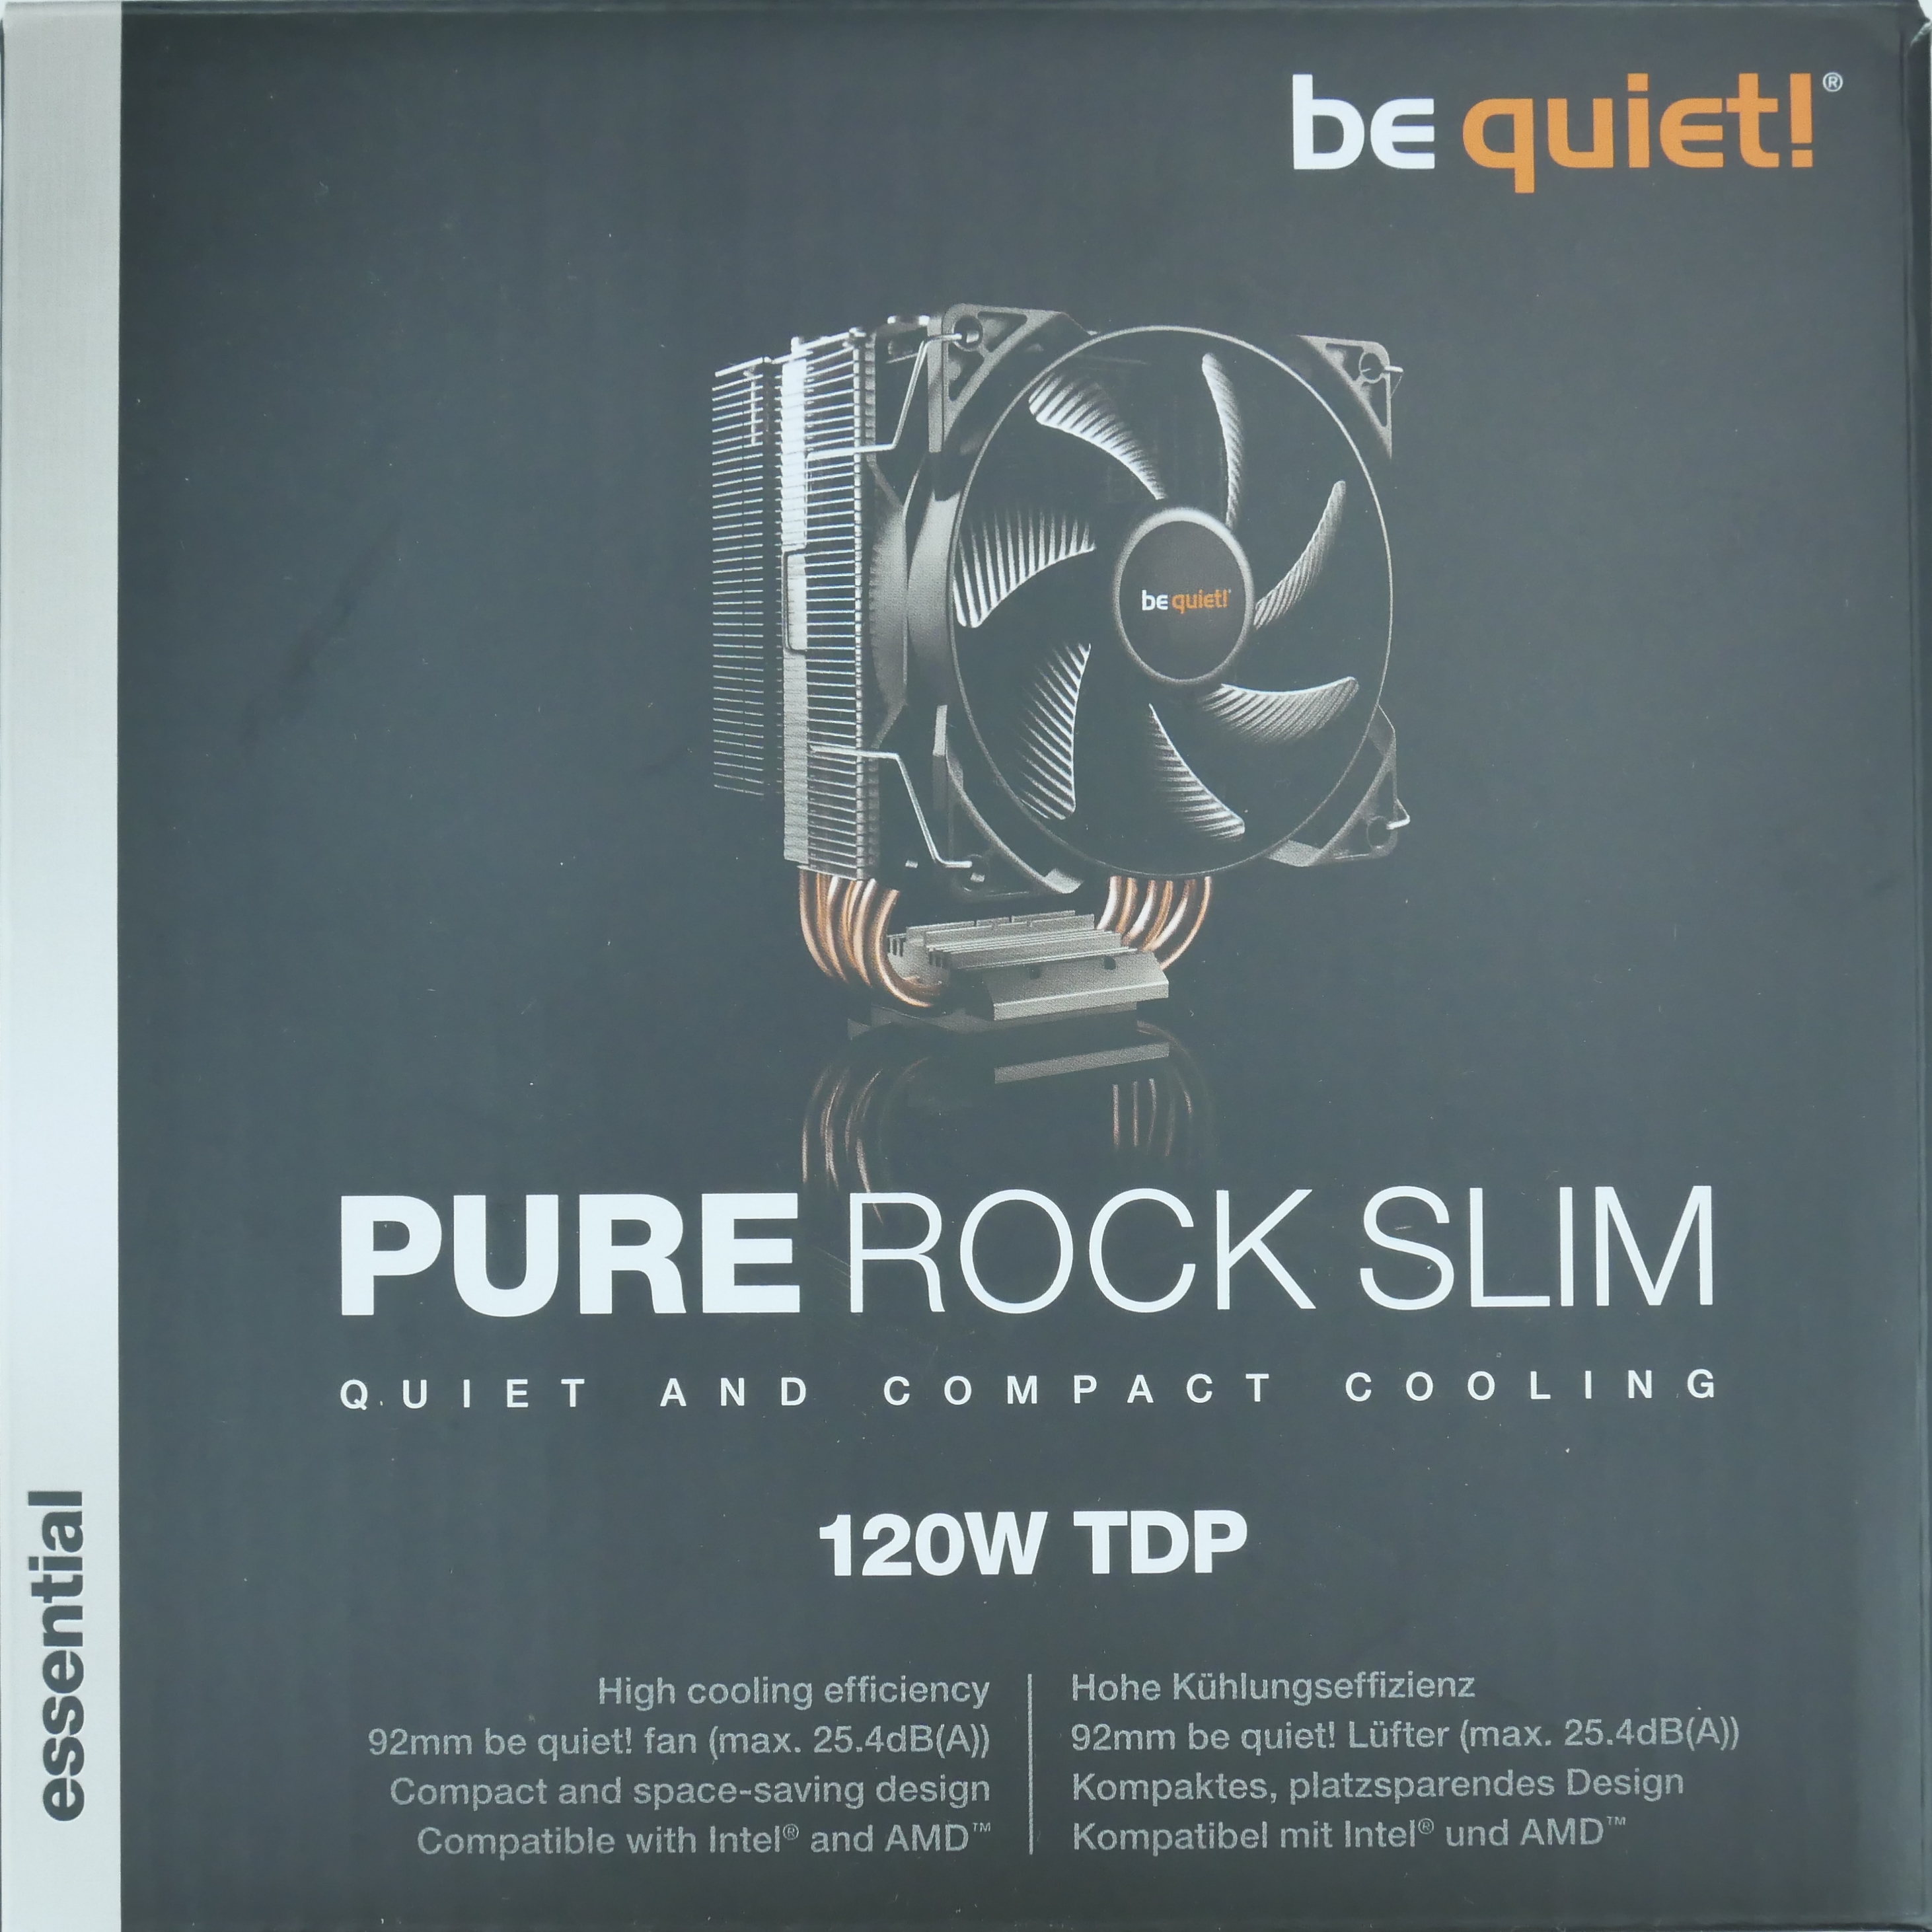 Ventirad be quiet! Pure Rock Slim 120W TDP